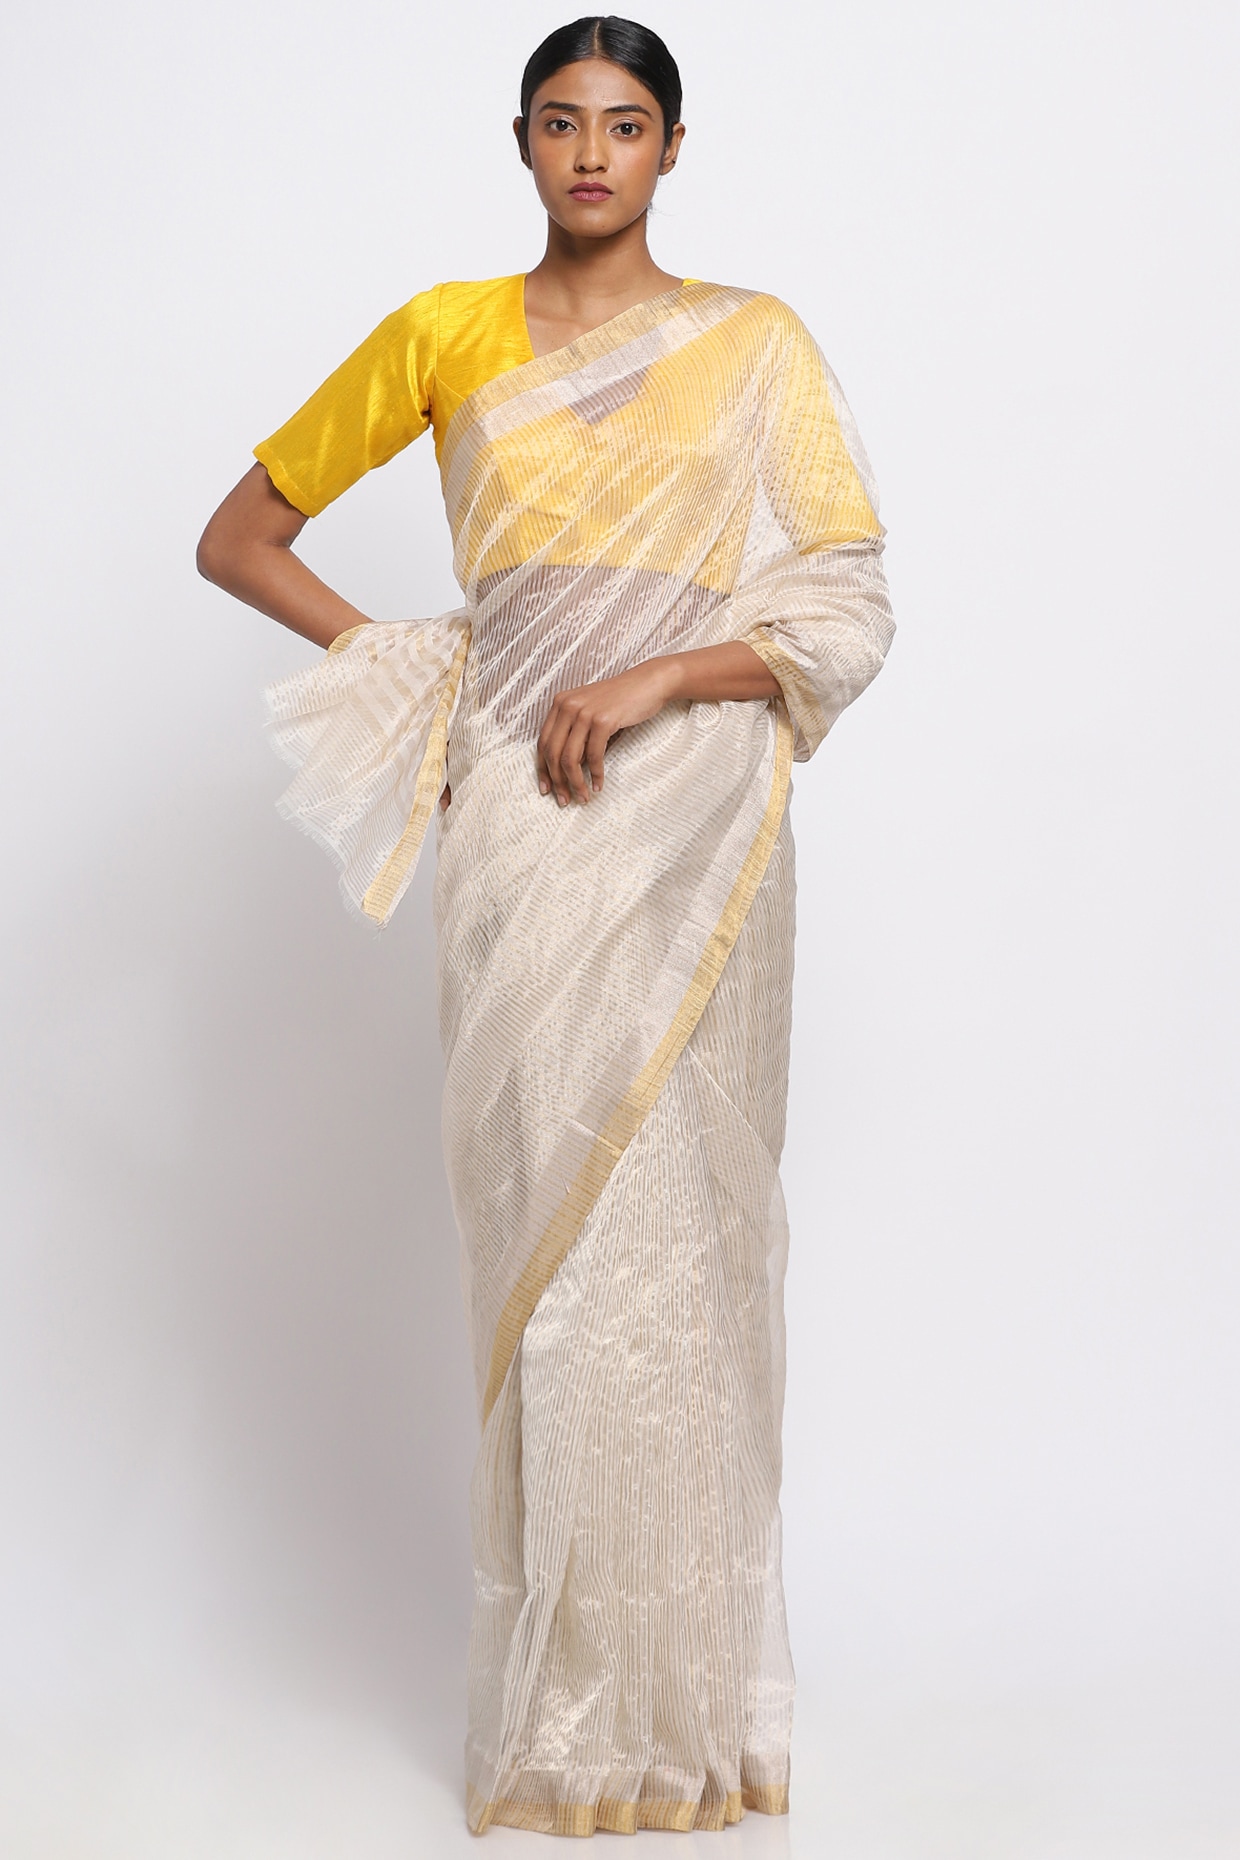 Buy Gold And Silver Handloom Tissue Saree Online | Chandi Aur Sona